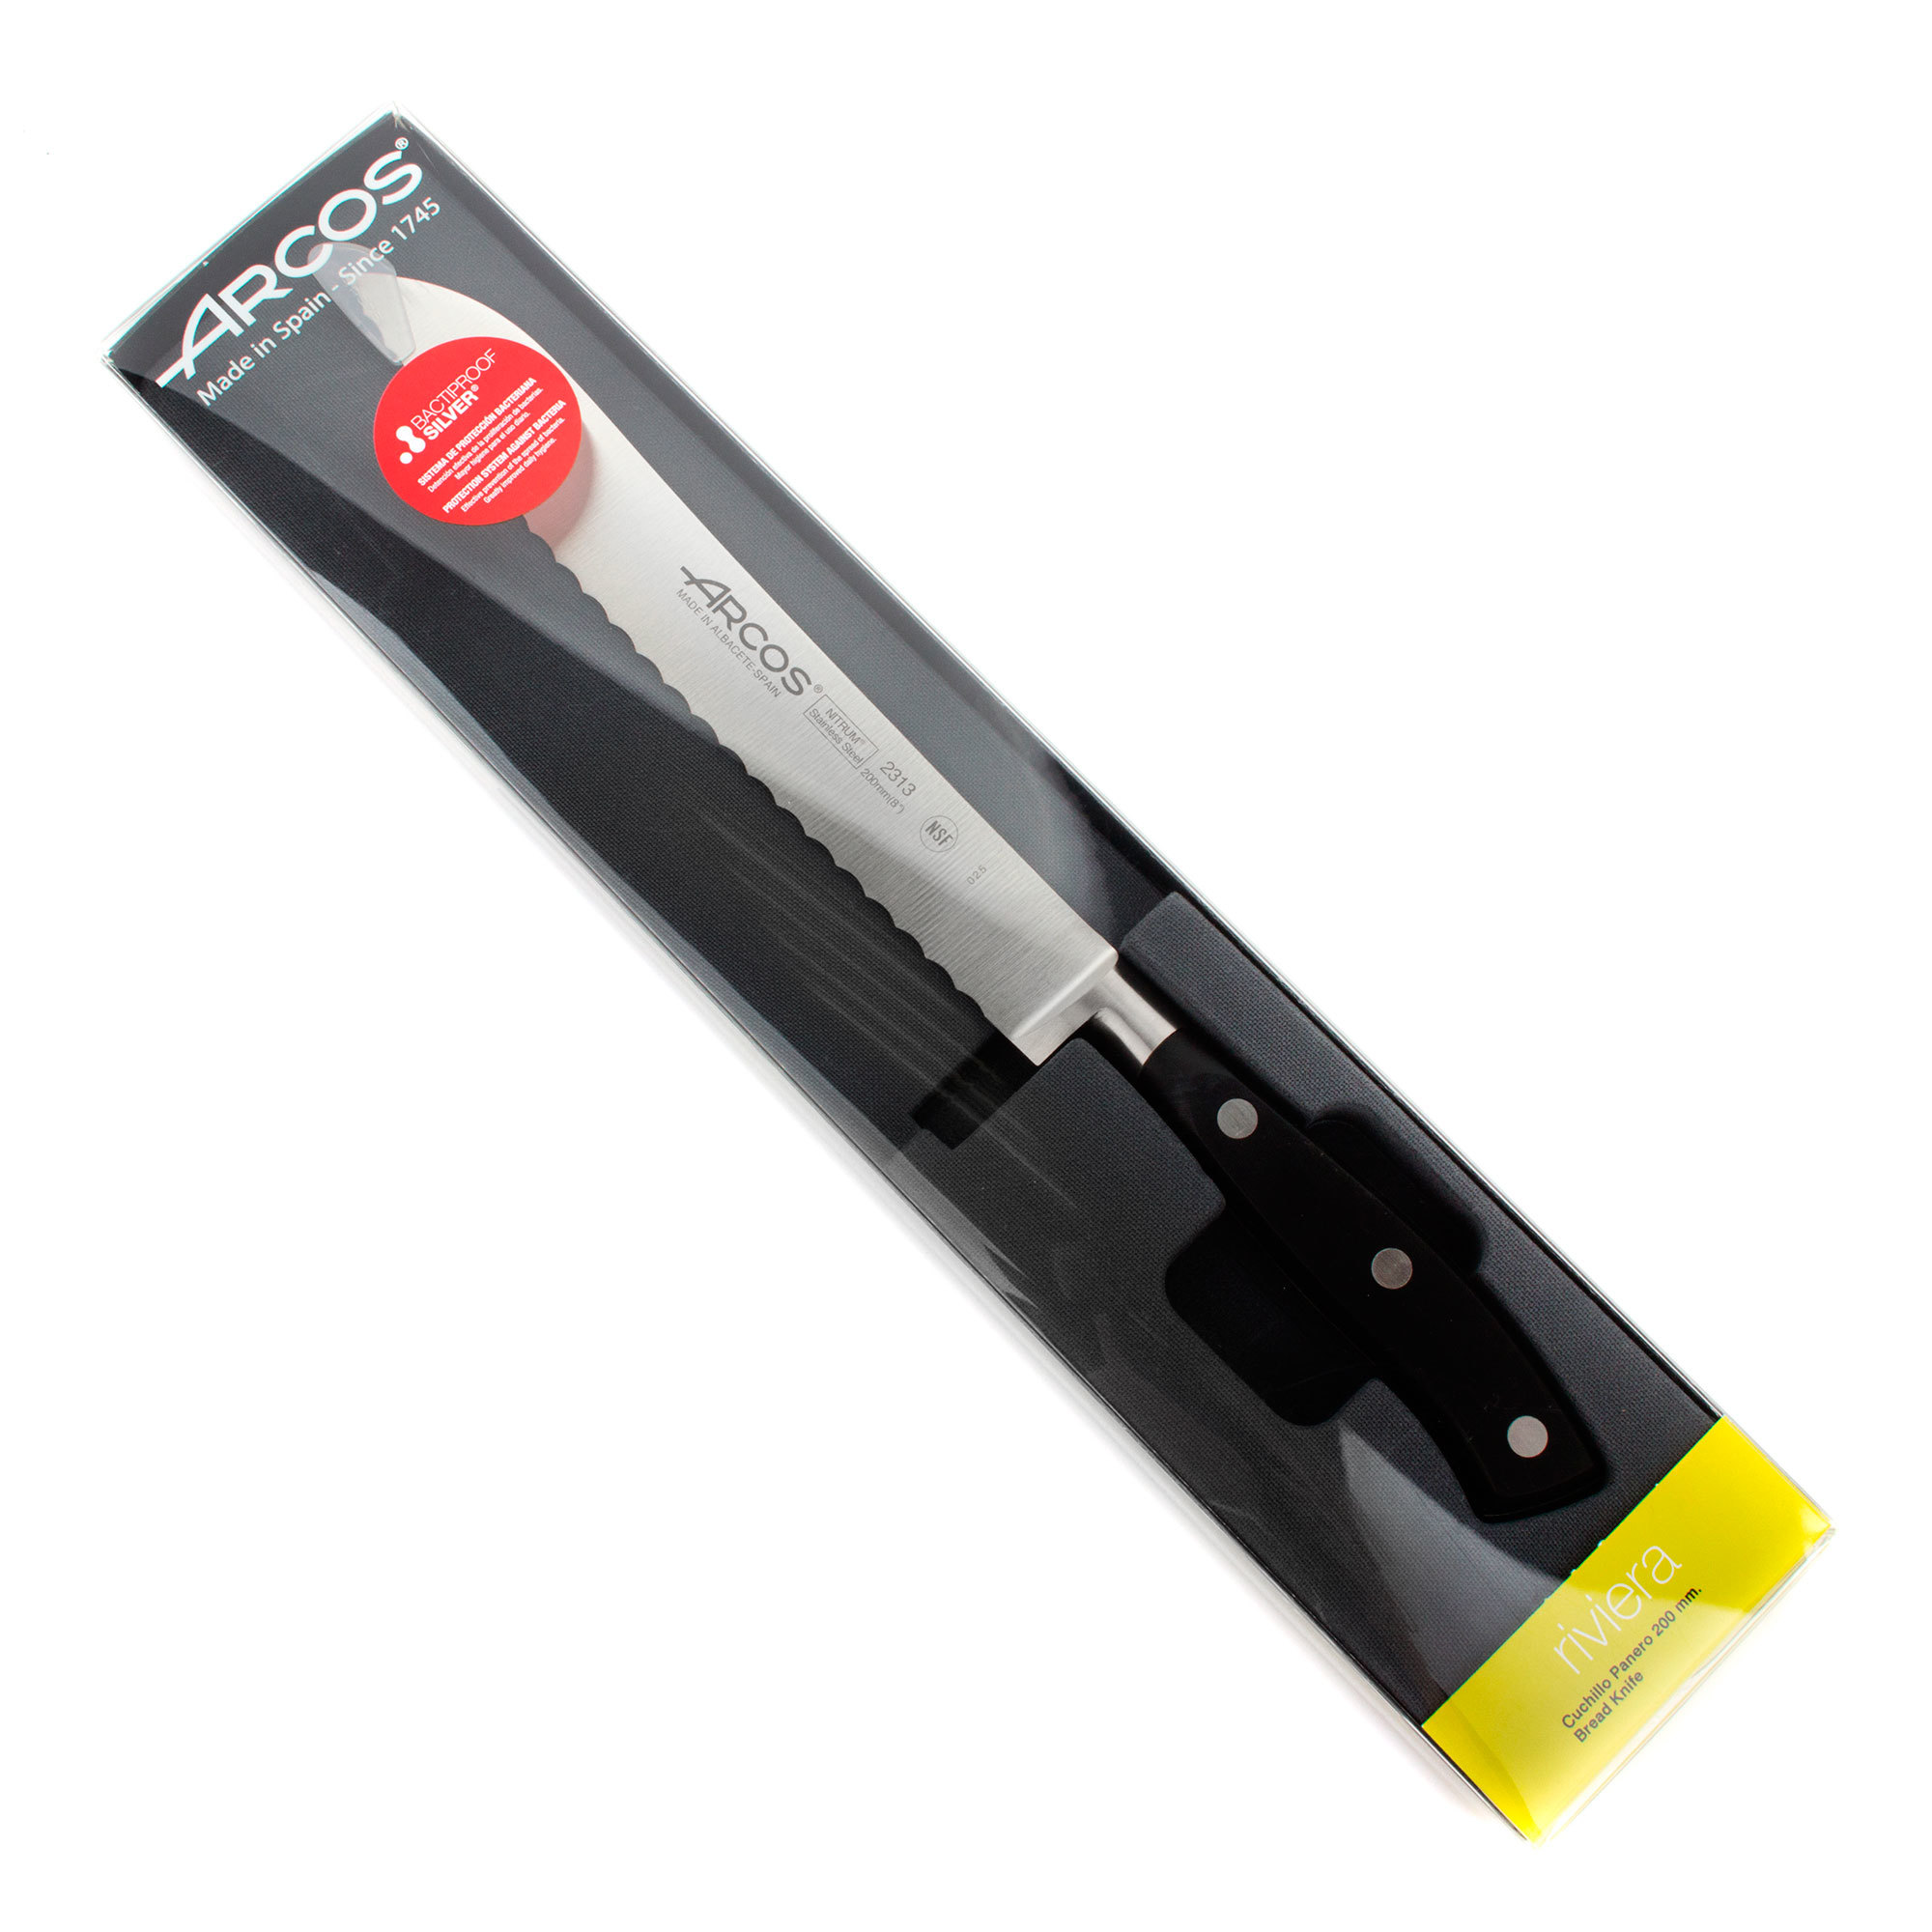 Нож кухонный стальной для хлеба 20 см ARCOS Riviera арт. 2313